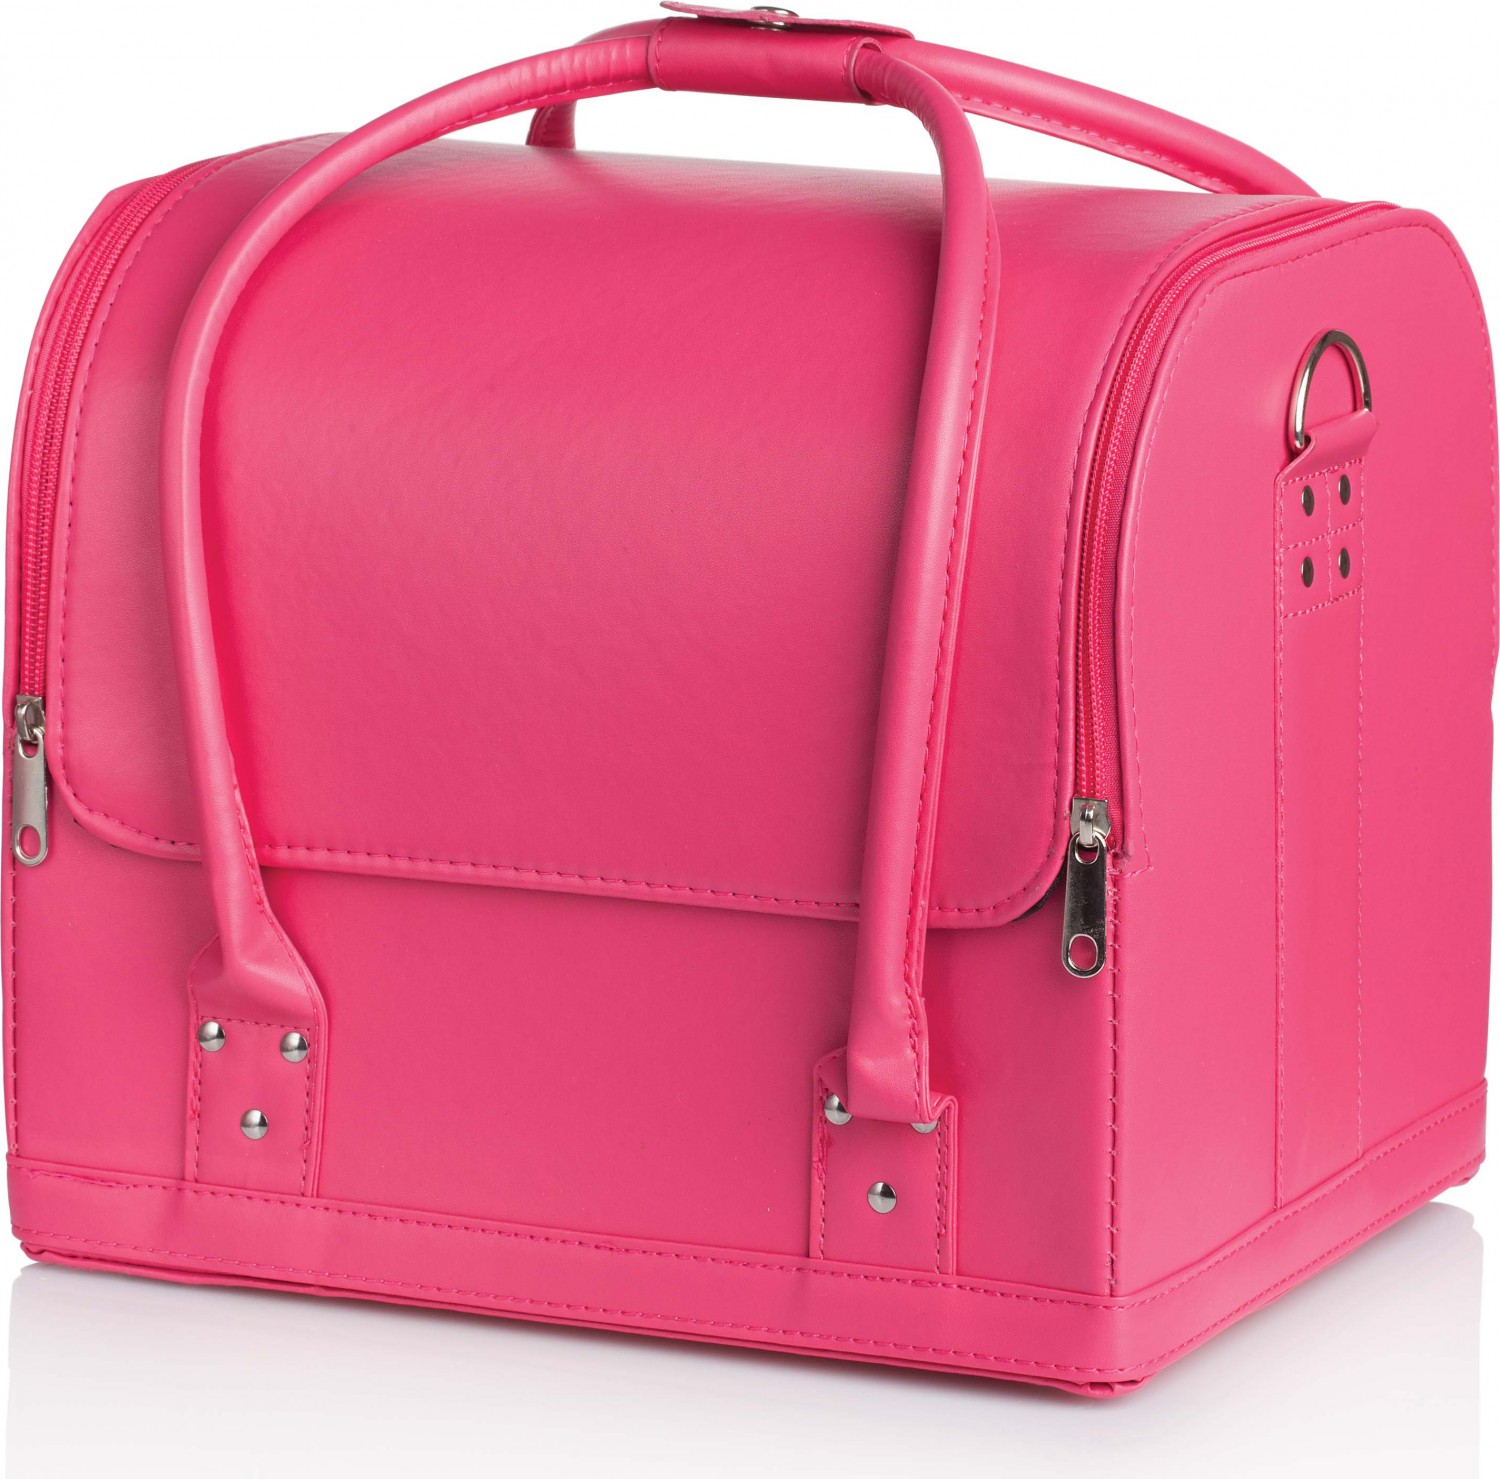  XanitaliaPro Mia Bag Hot pink 